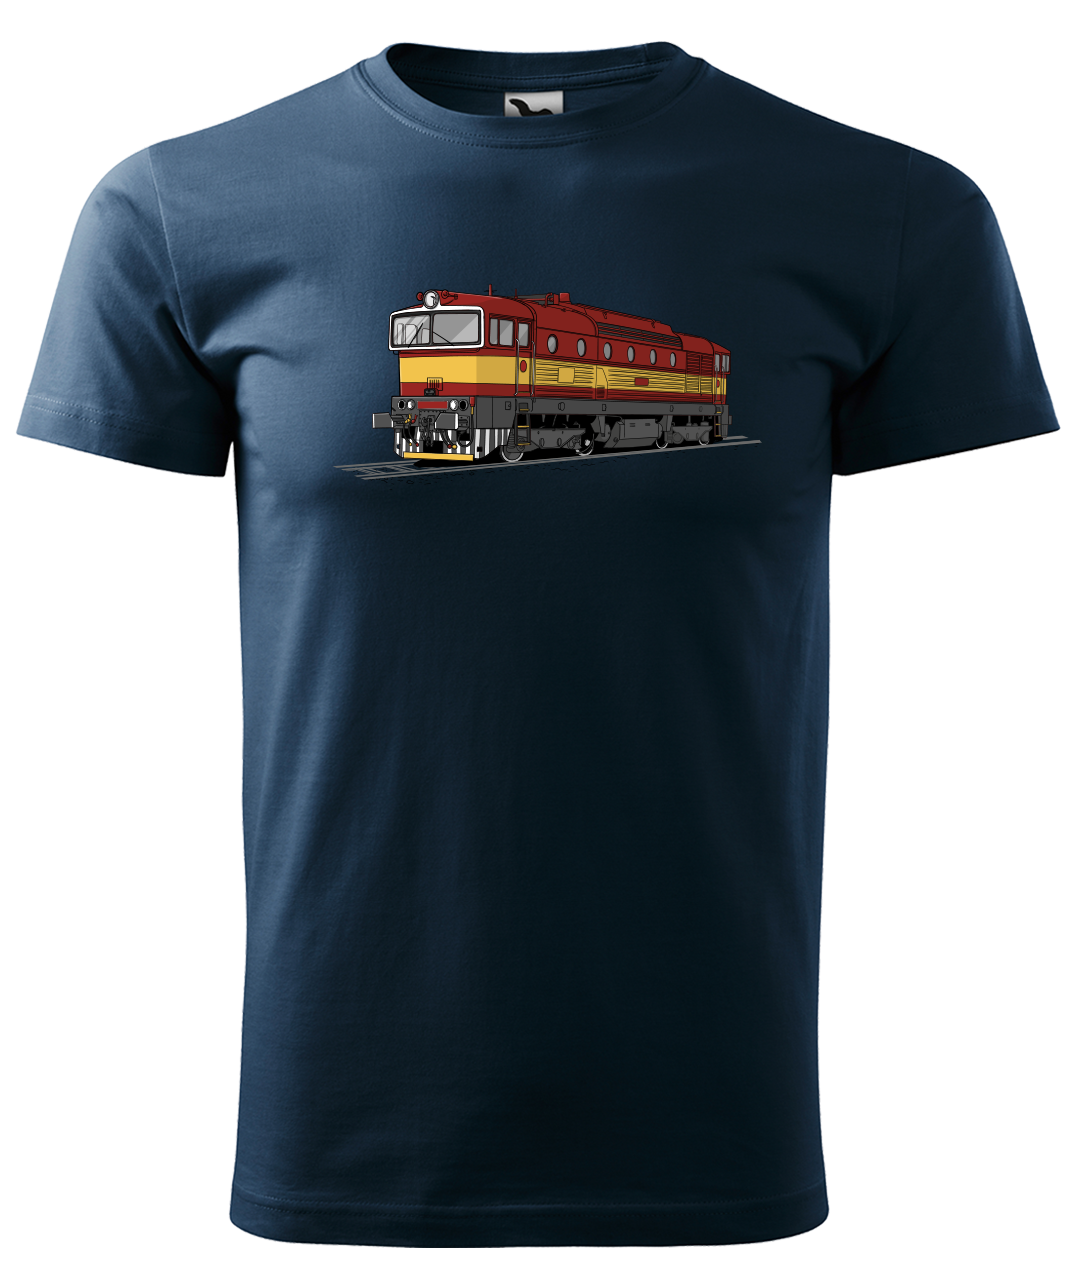 Dětské tričko s vlakem - Barevná lokomotiva BREJLOVEC Velikost: 4 roky / 110 cm, Barva: Námořní modrá (02)